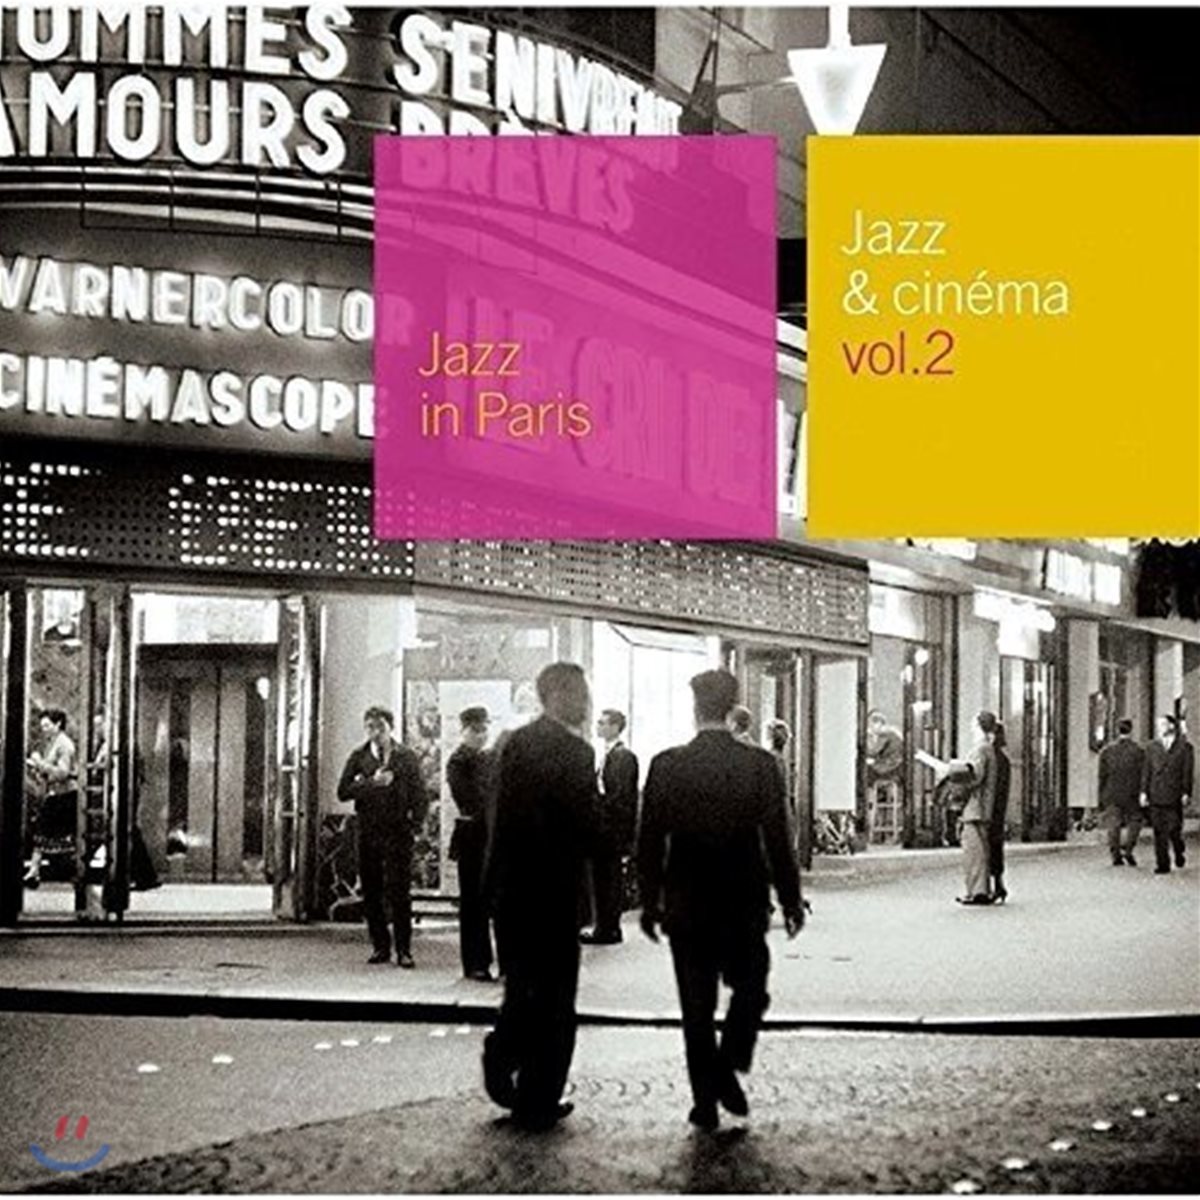 재즈 &amp; 시네마 2집 - 프랑스 고전영화 속 재즈 음악 모음집 (Jazz in Paris - Jazz &amp; Cinema Vol.2)